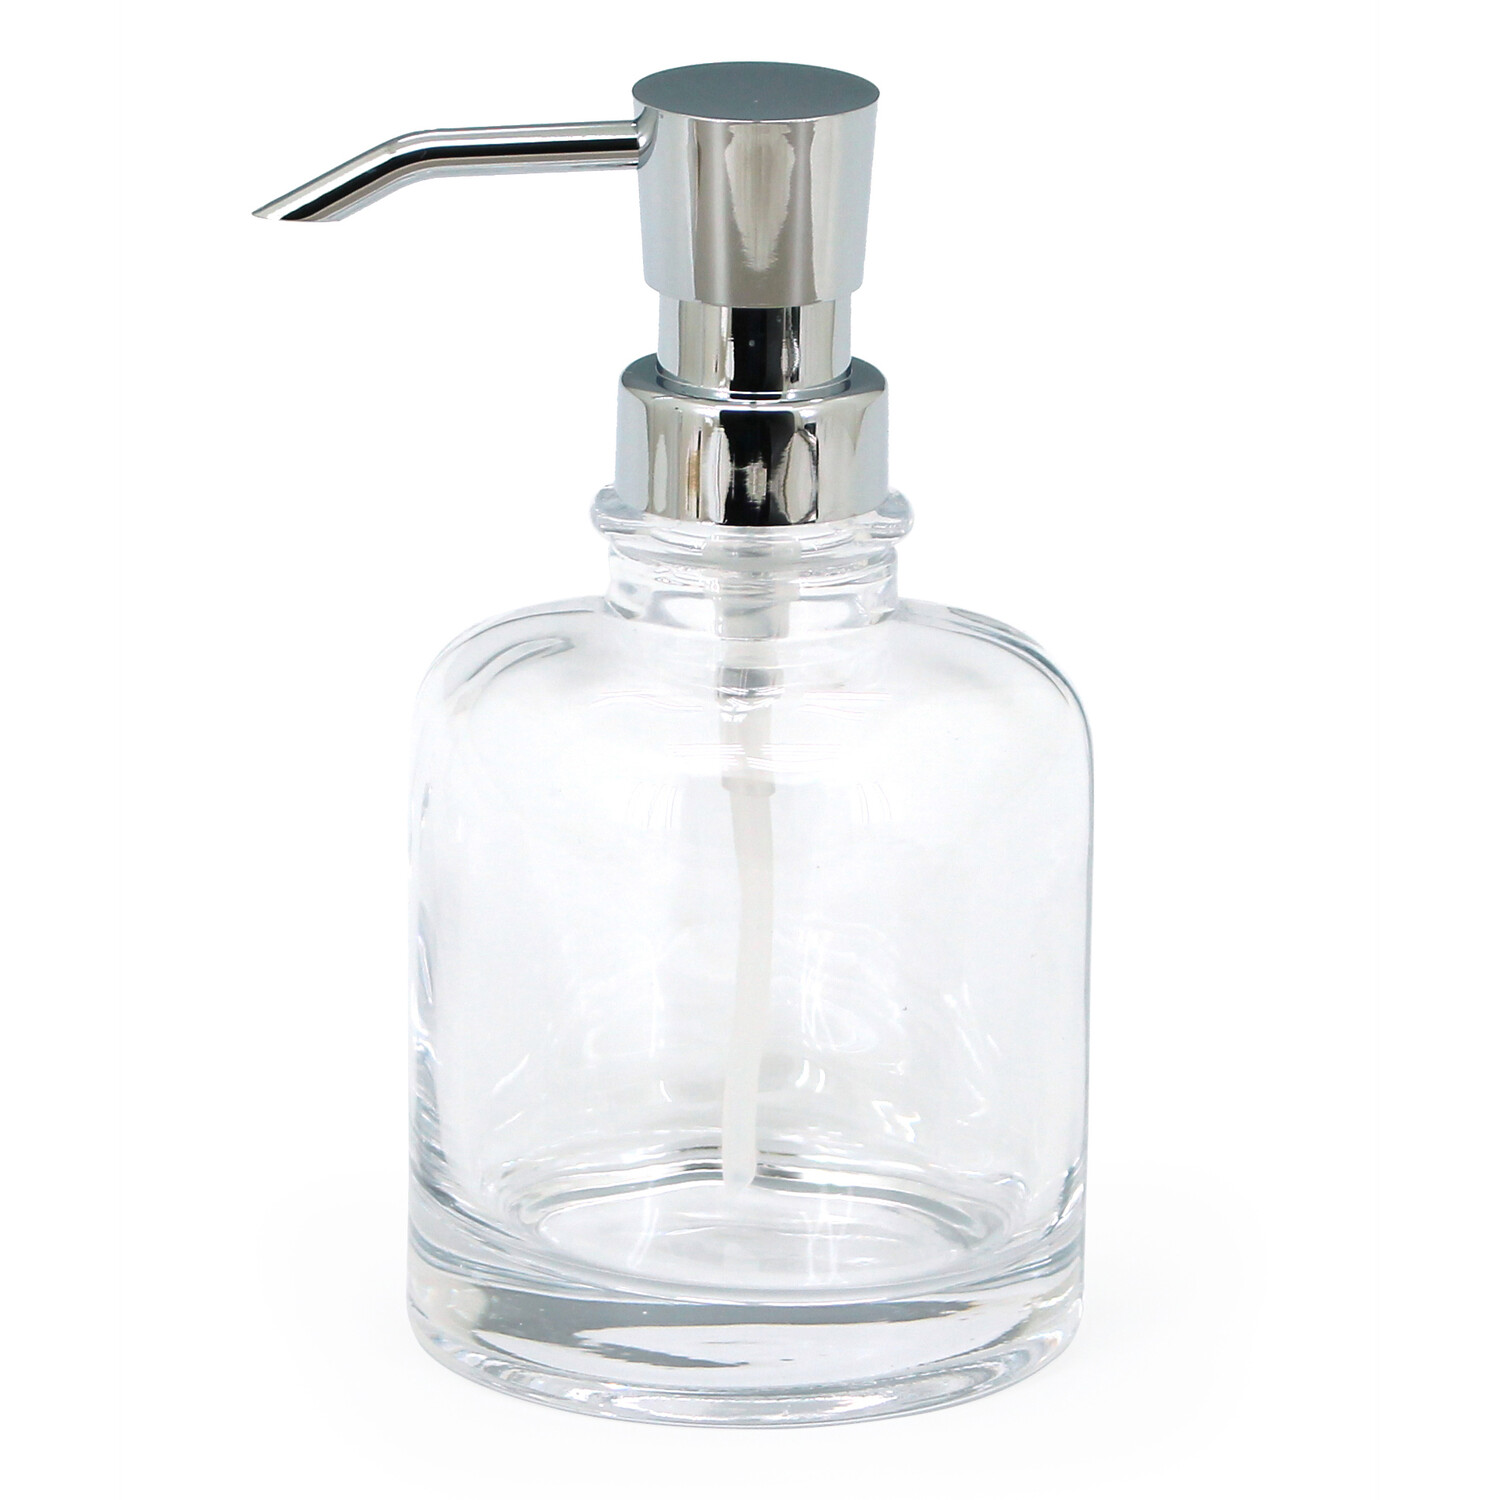 Elegance Clear Soap Dispenser Image